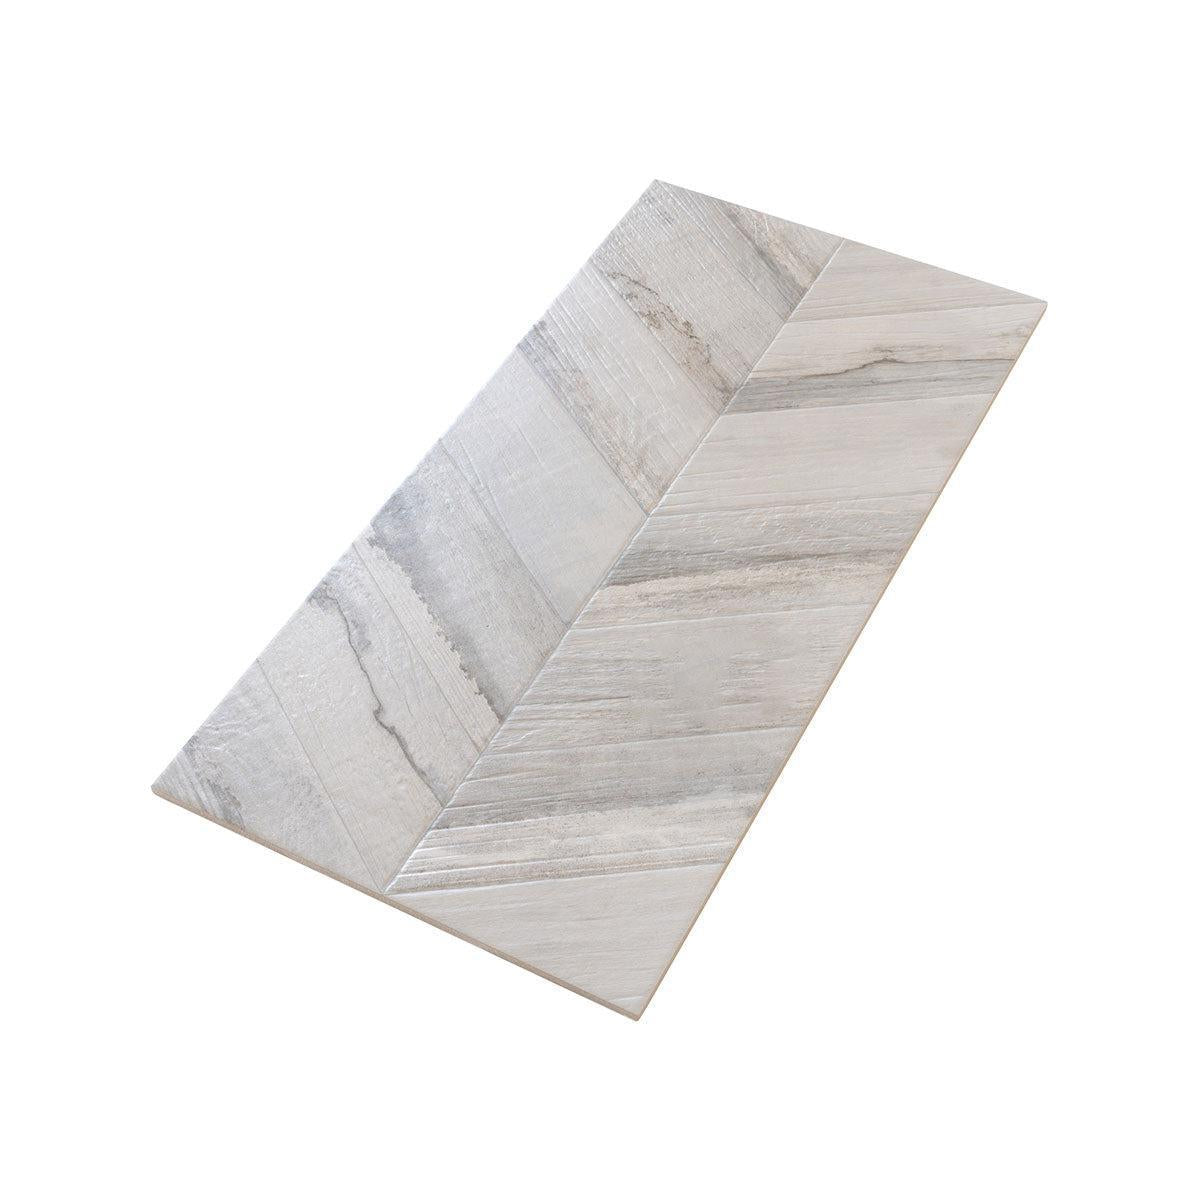 Spiga Olson Gris Wood-Look Chevron Porcelain Tile